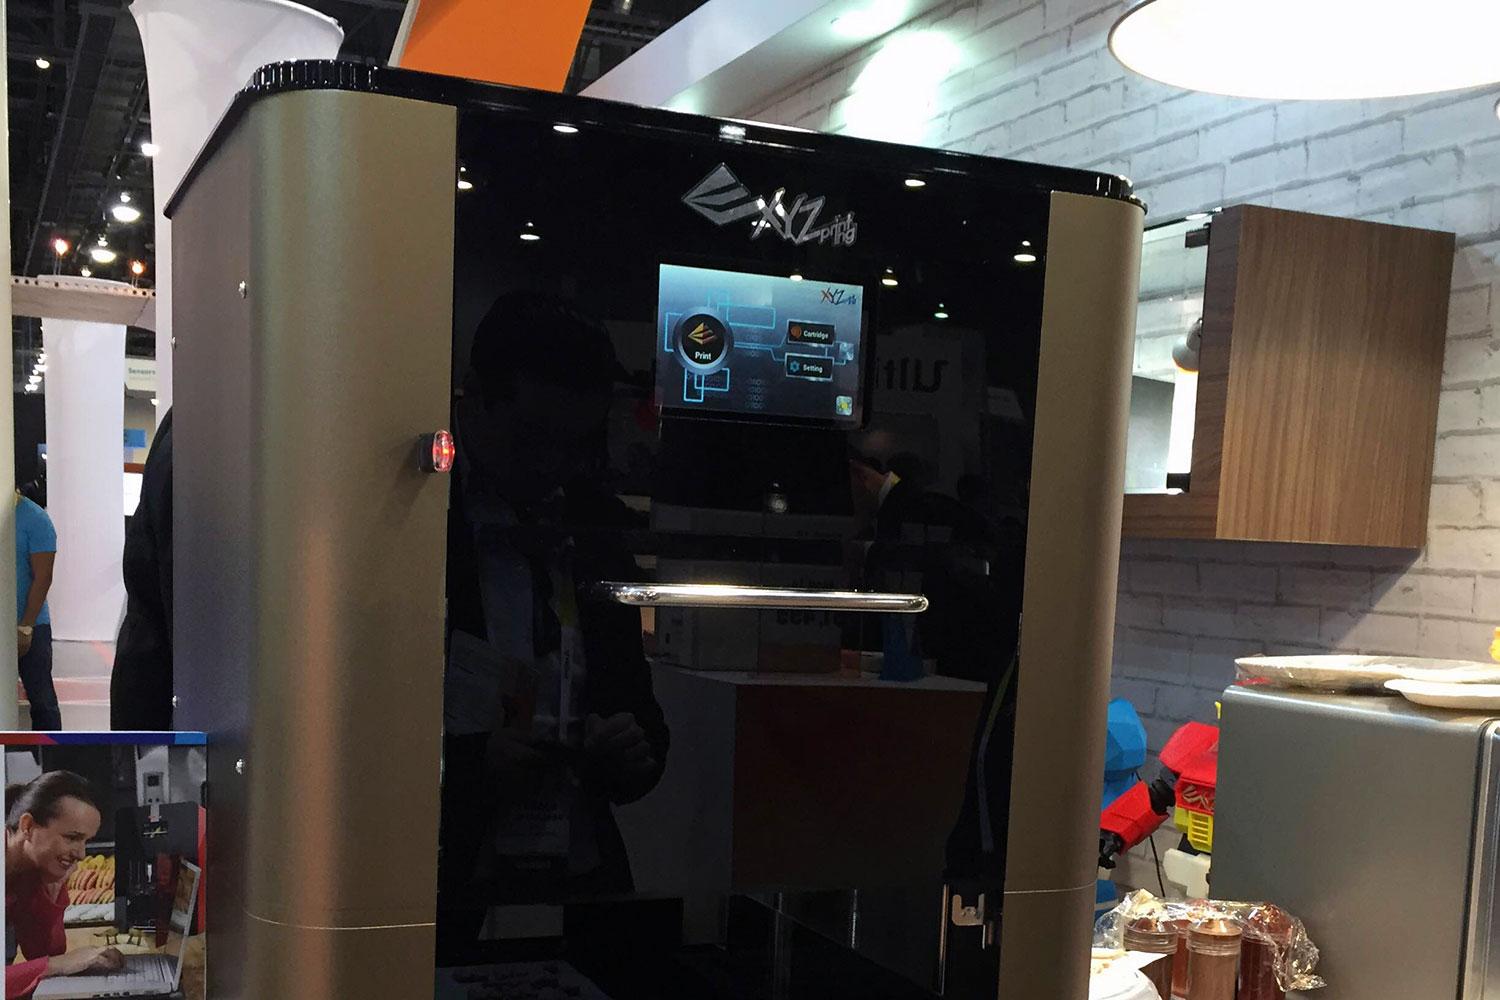 xyzprinting debuts 3d food printer at ces 2015 0099